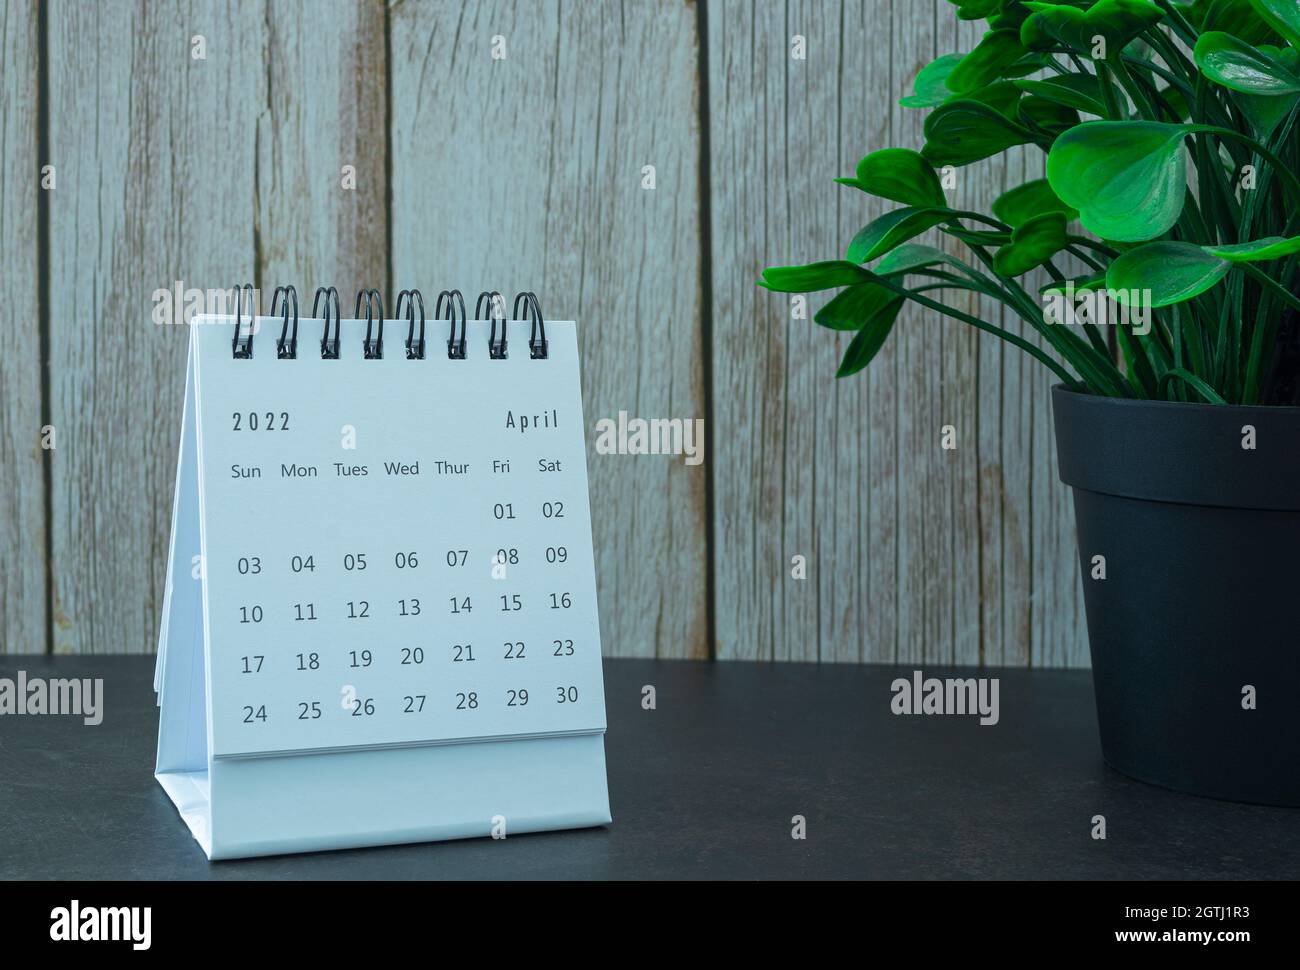 Calendrier blanc d'avril 2022 avec plante en pot. Concept du nouvel an 2022 Banque D'Images